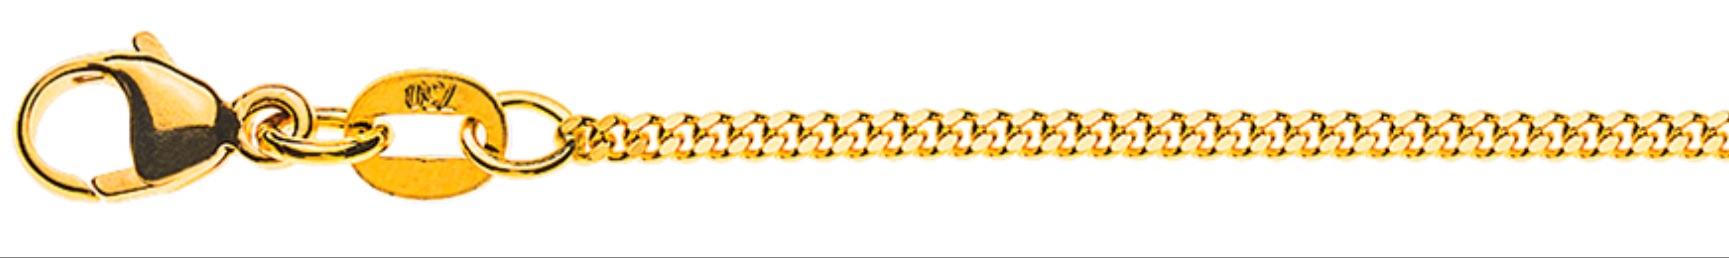 AURONOS Élégance Necklace yellow gold 14K curb chain polished 50cm 1.6mm